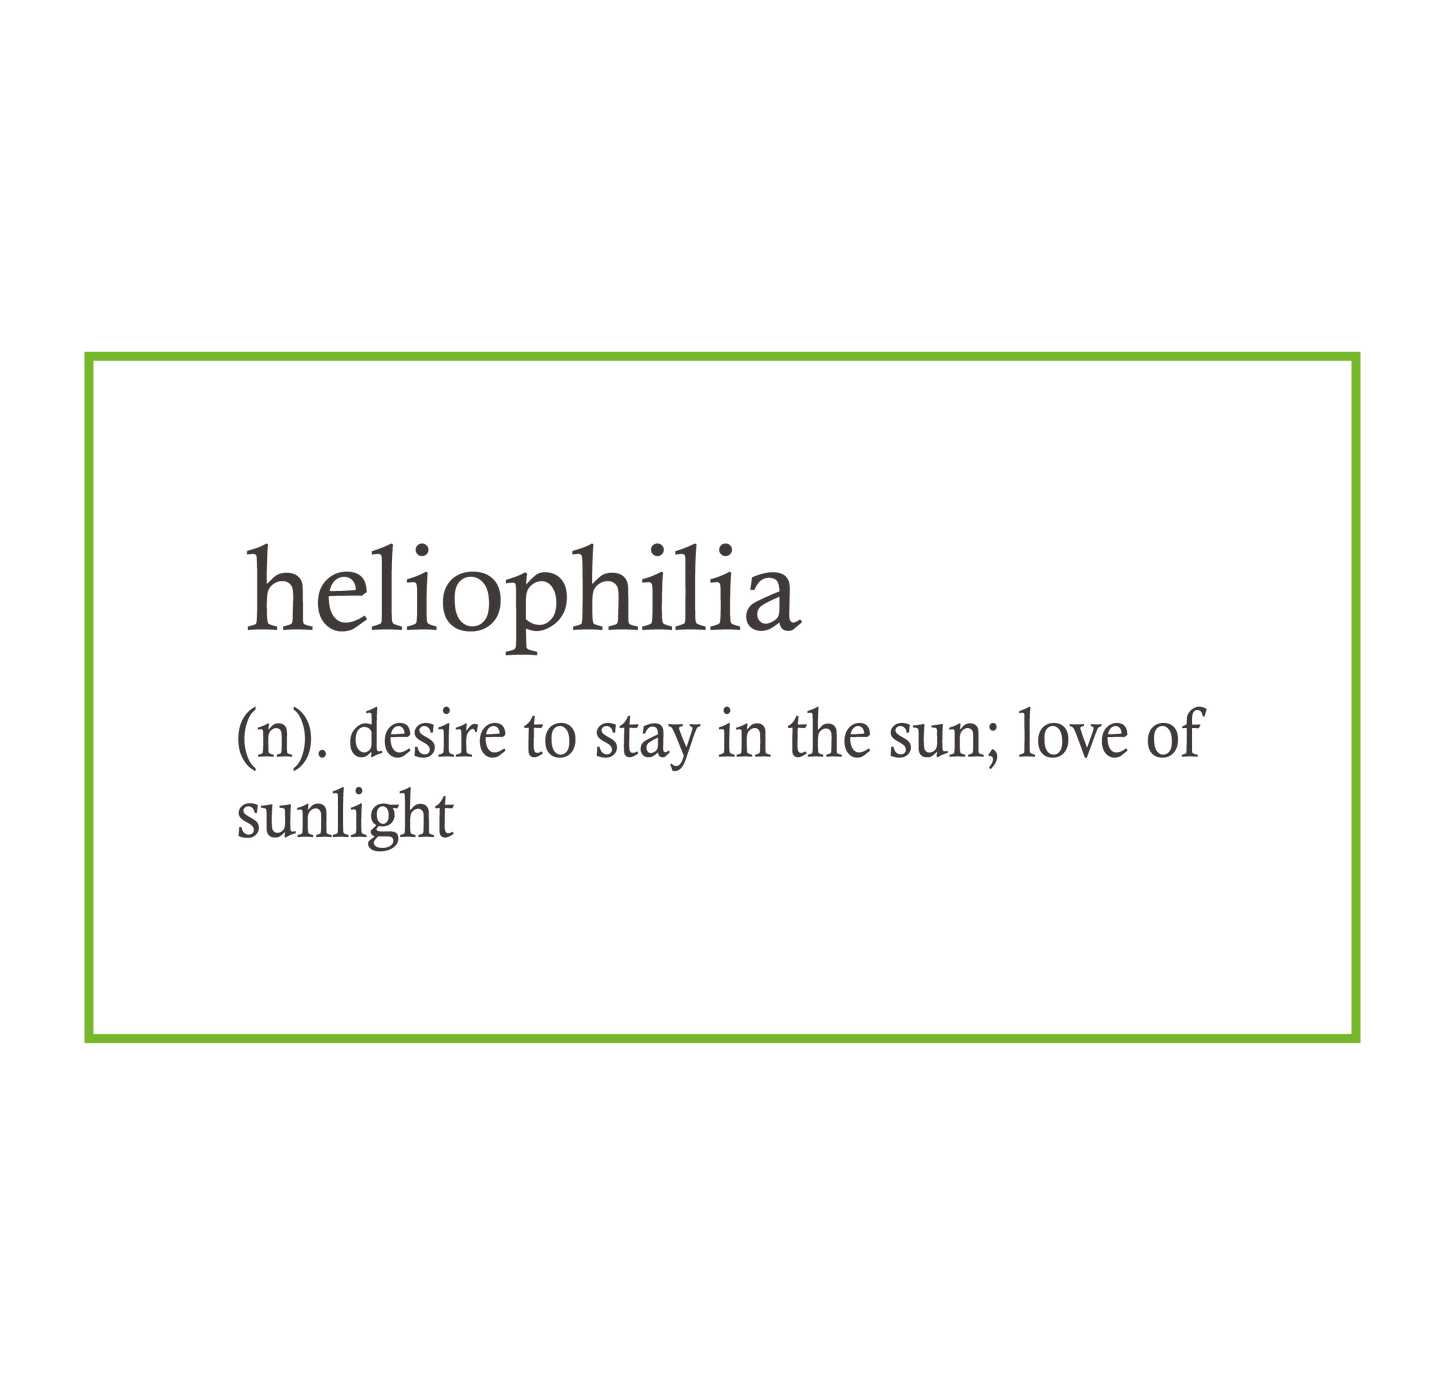 Heliophilia